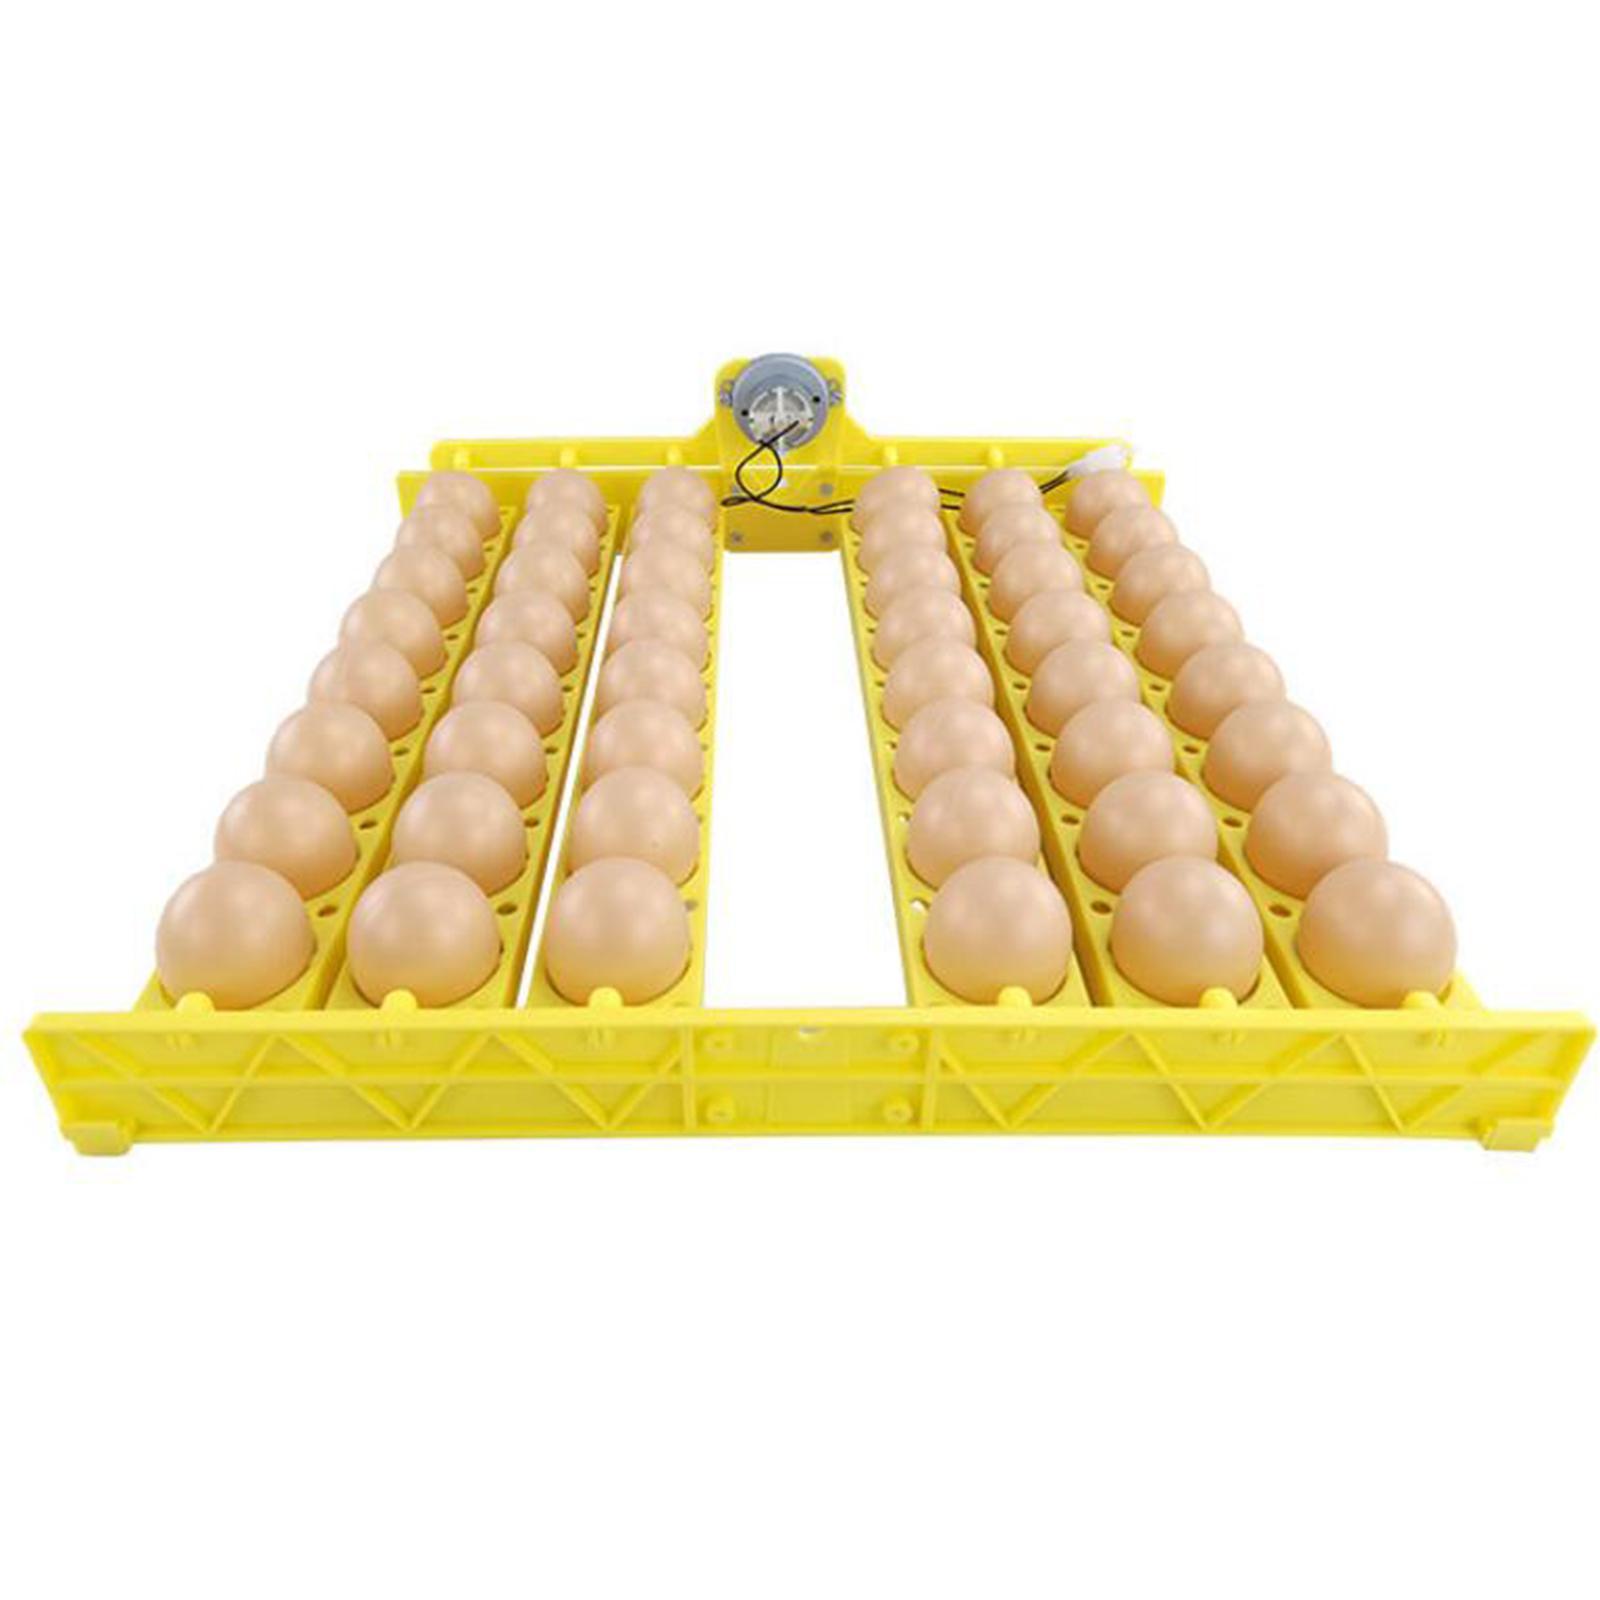 Automatic Egg Incubator Egg Hatcher 48 Eggs Egg Flipping Equipment for Home Farmhouse